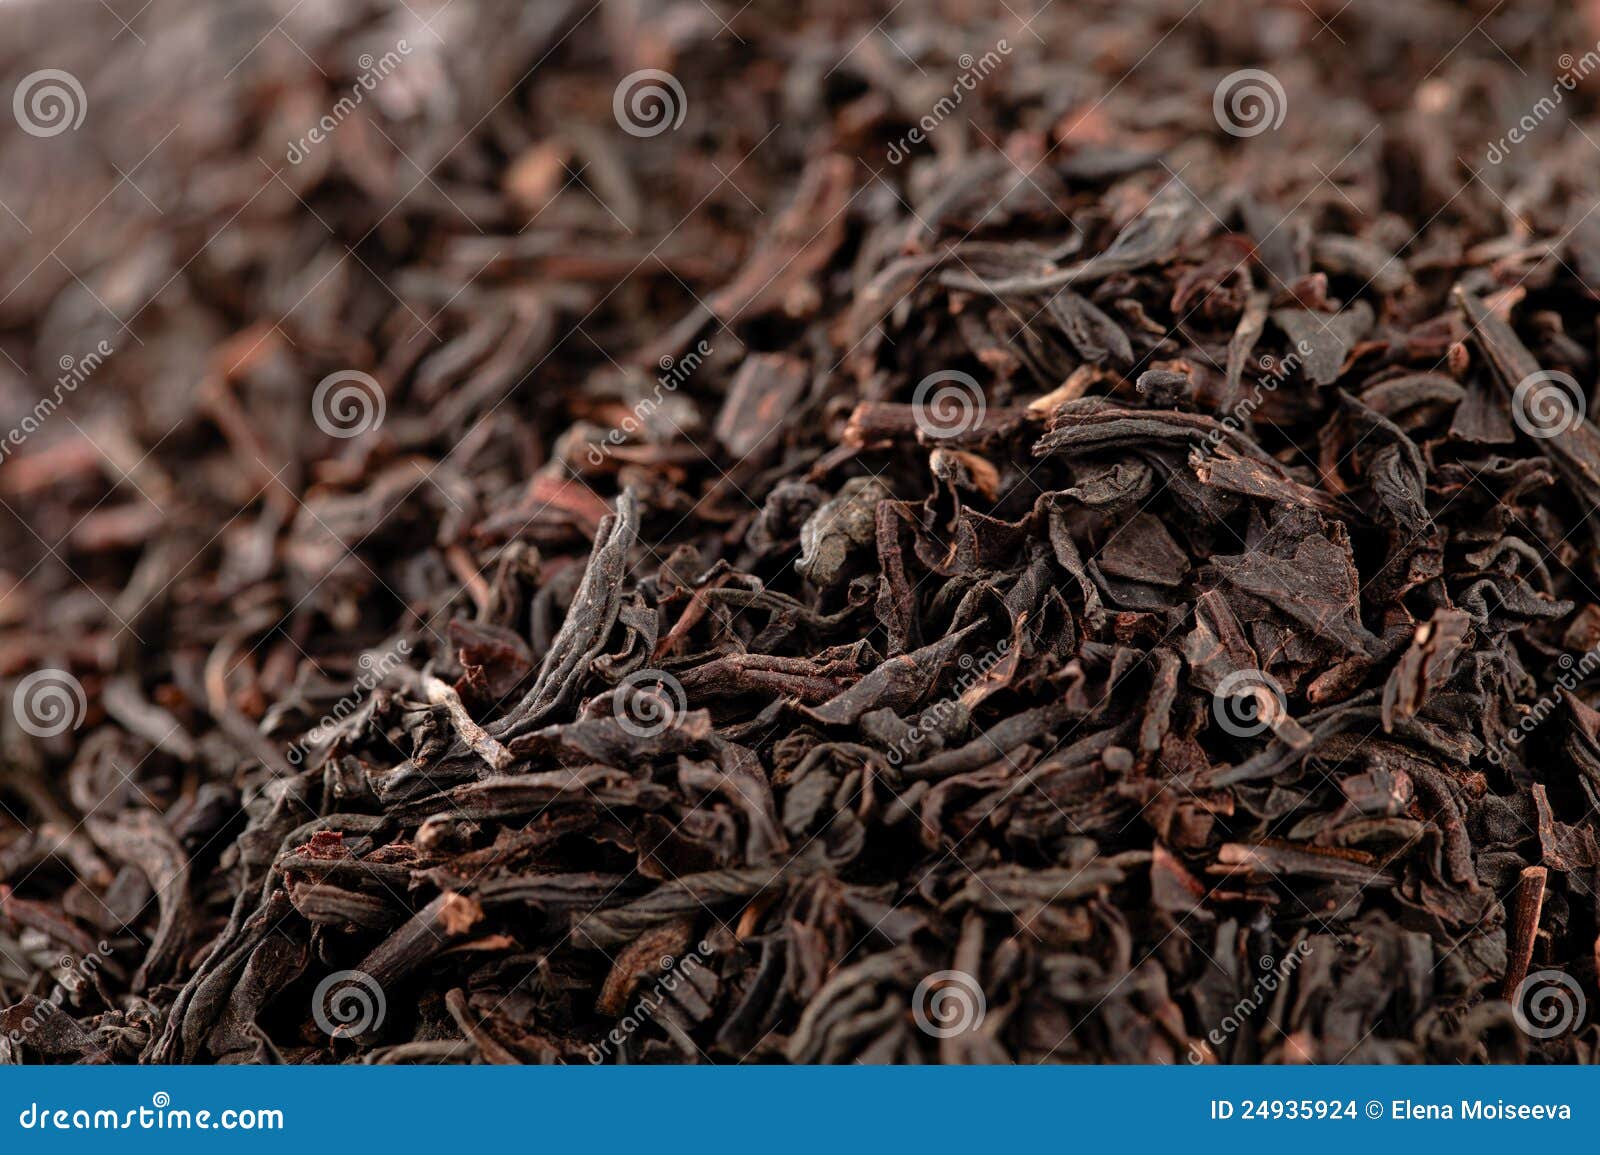 earl grey black loose tea leaves background